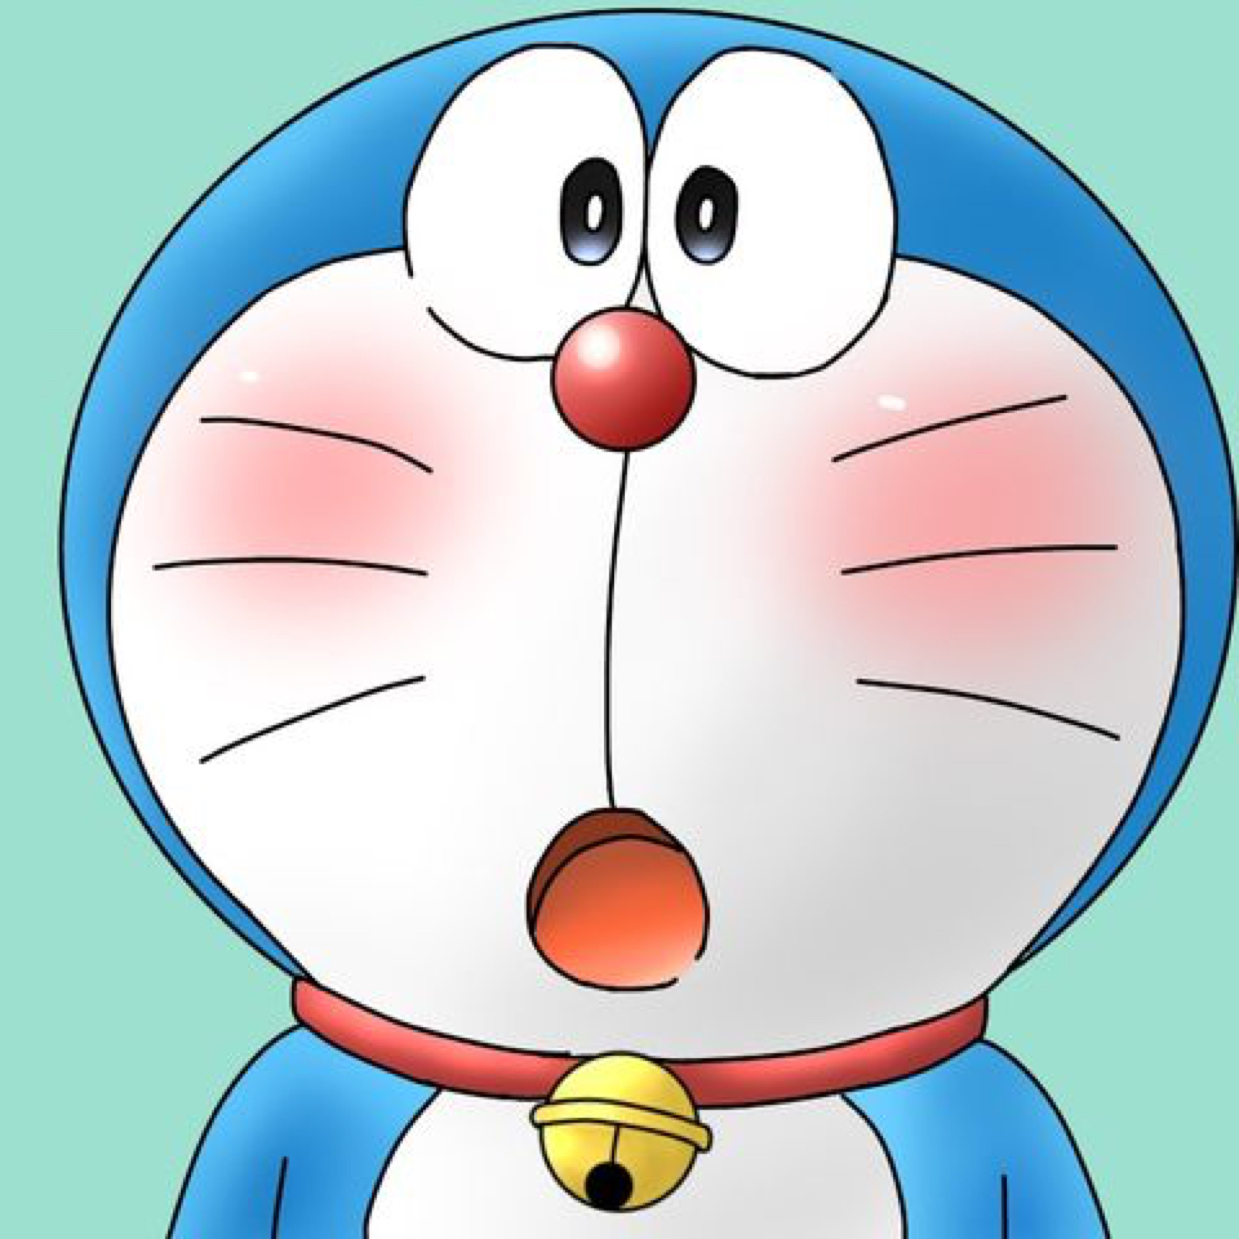 Hãy tưởng tượng bạn là chủ nhân của một chiếc điện thoại thông minh với ảnh đại diện đáng yêu này! Bạn sẽ trở nên cuốn hút và thu hút sự chú ý của người khác. Bấm vào đây để xem bức ảnh đại diện Doraemon đáng yêu nhất mọi thời đại và tạo ra ấn tượng với mọi người nhé!